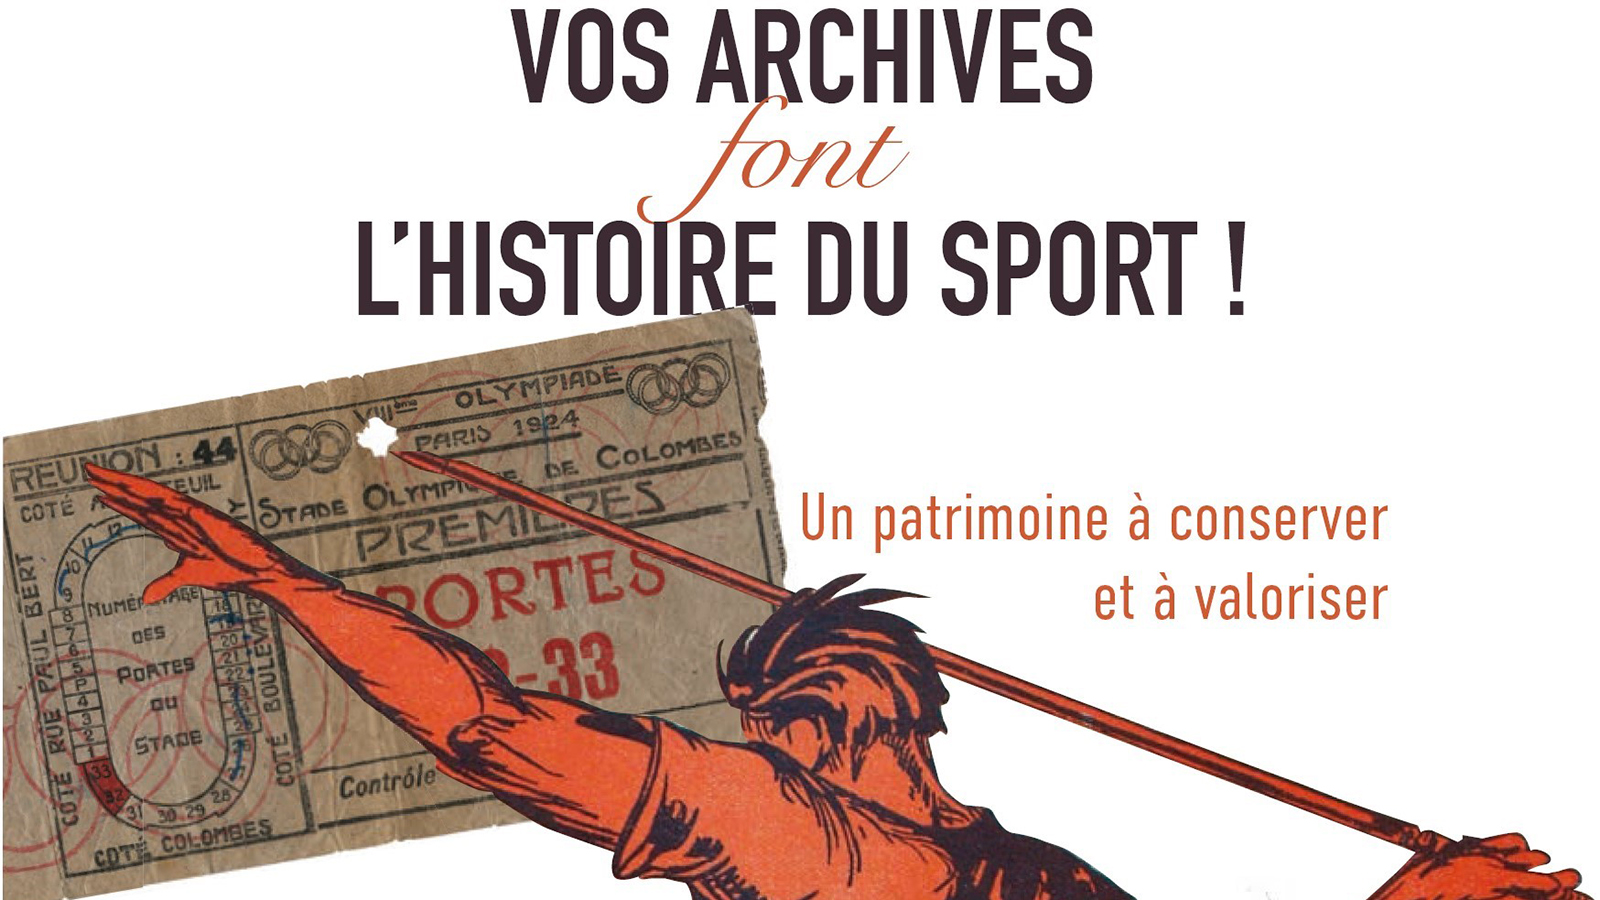 Vos archives font l’histoire du sport : à vos marques, prêt ? Archivez ! 